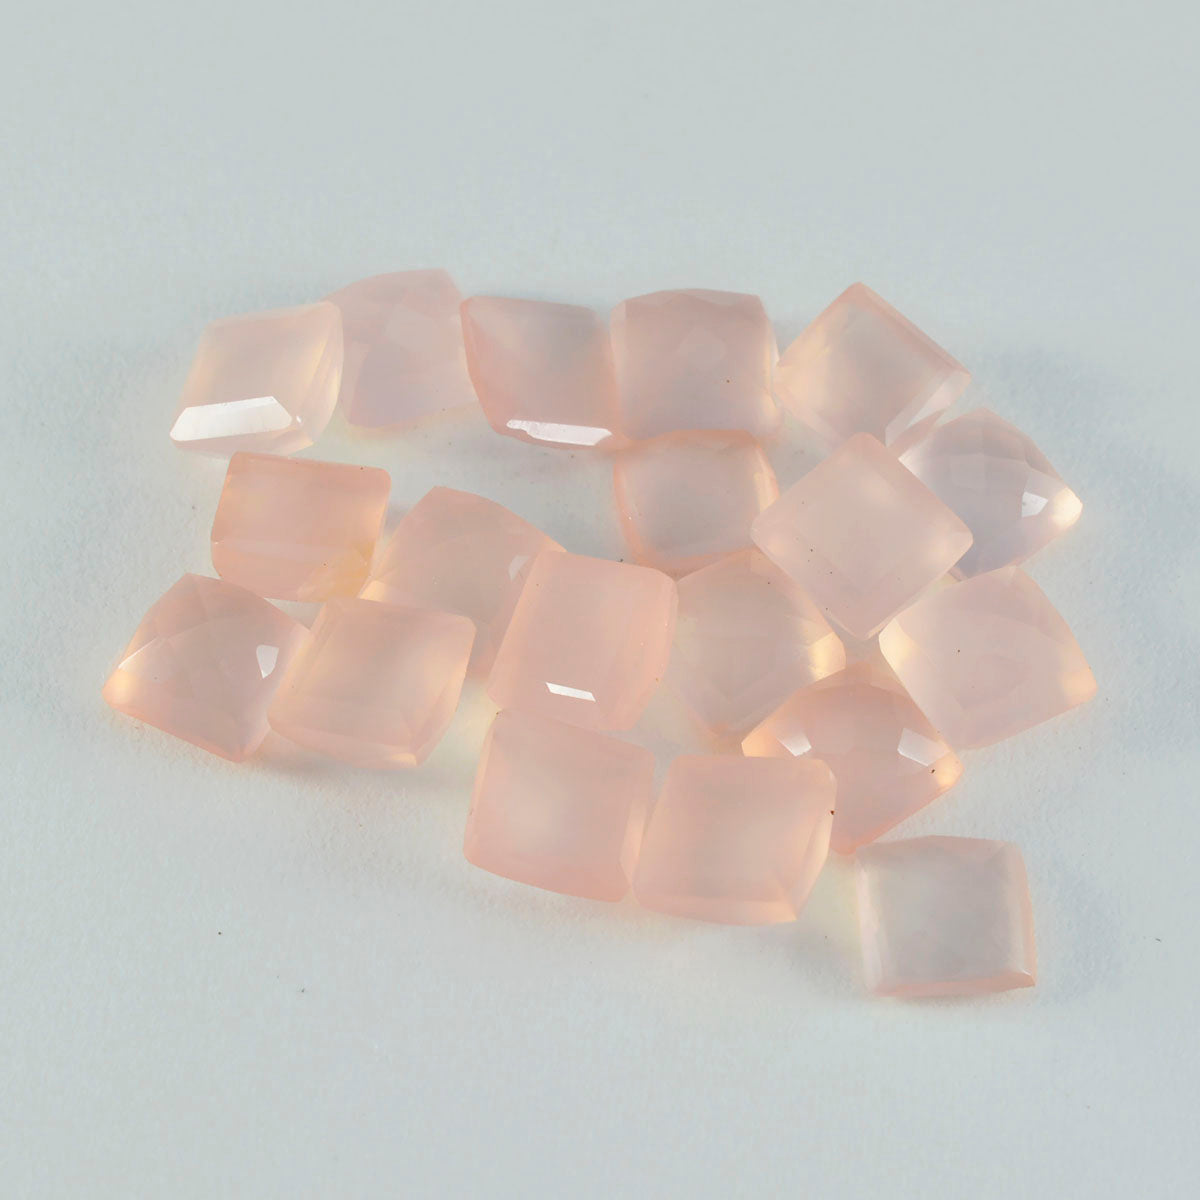 riyogems 1 st rosa rosékvarts facetterad 6x6 mm kvadratisk form härlig kvalitetspärla